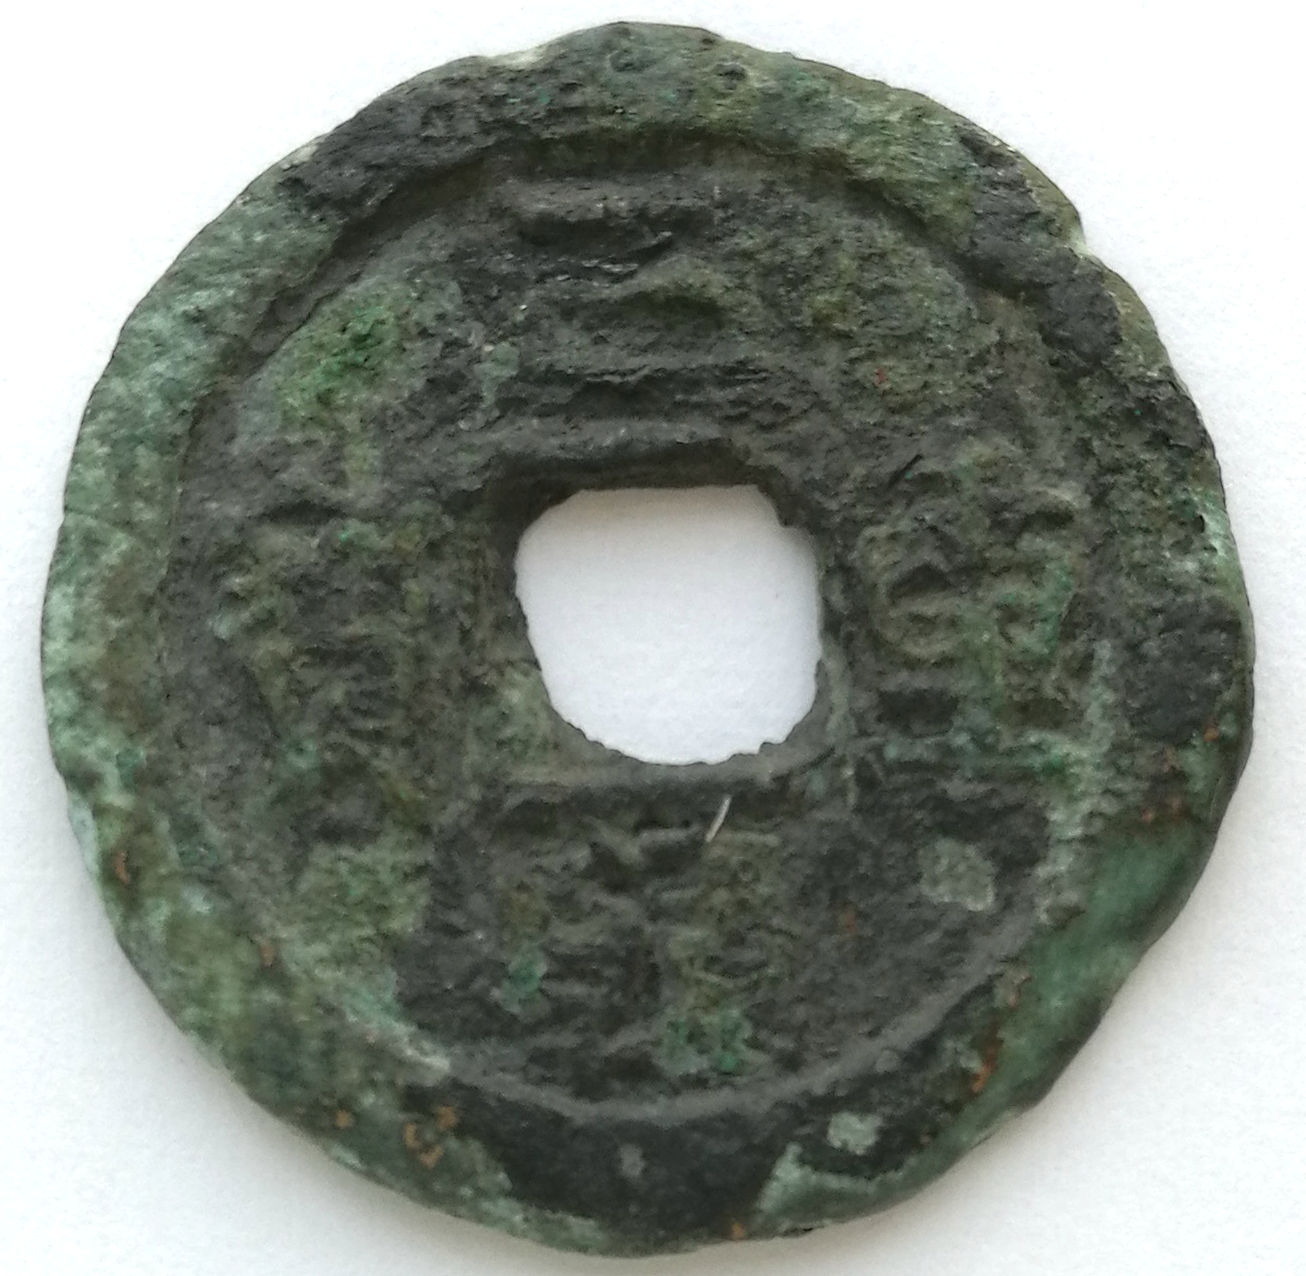 L2140, Korea "San-Han Zhong-Bao" Ancient Coin, Regular Script, AD 1095-1104